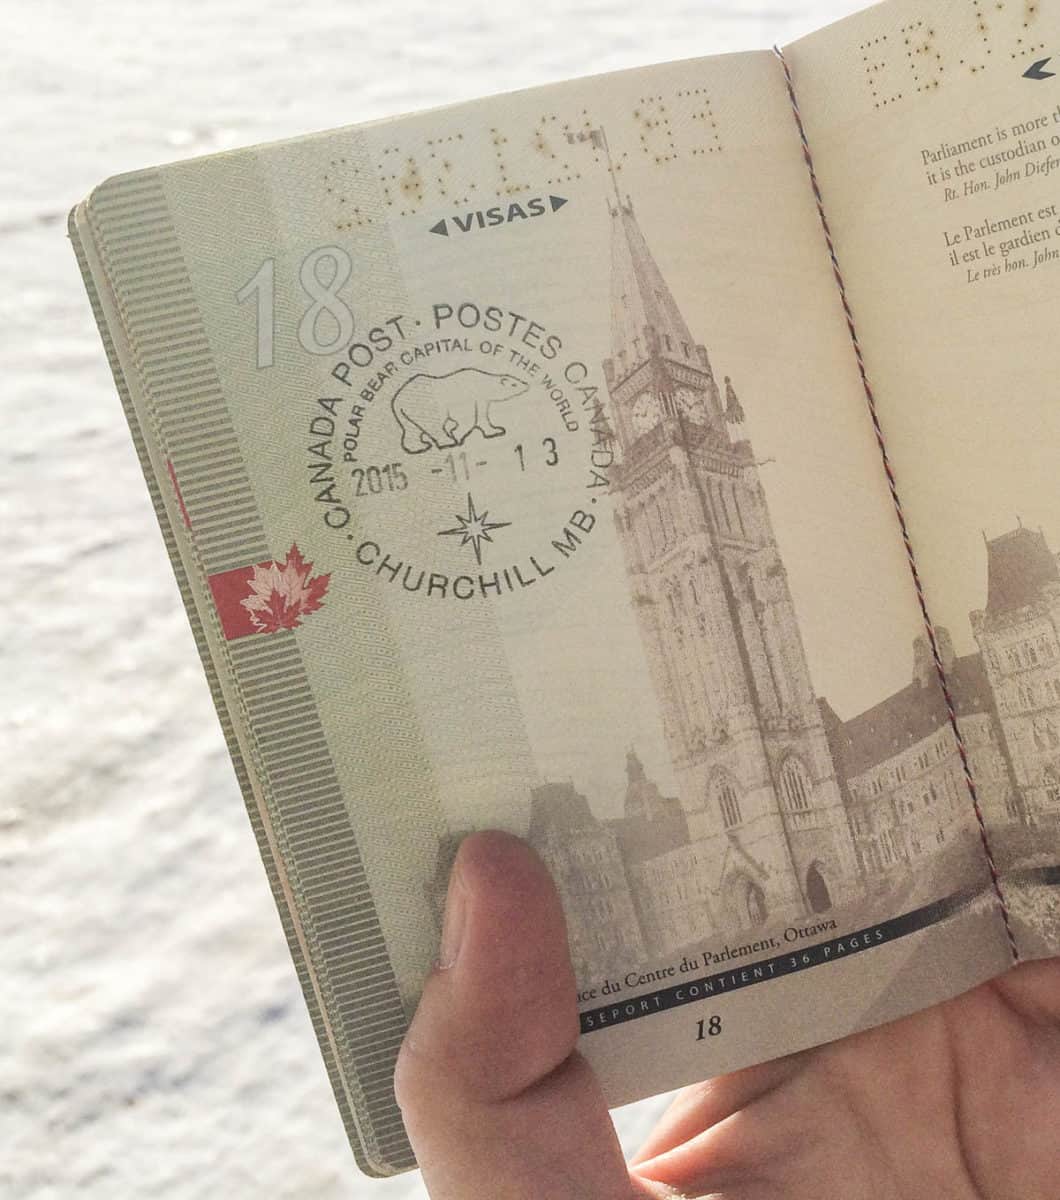 Passport stamp in Churchill